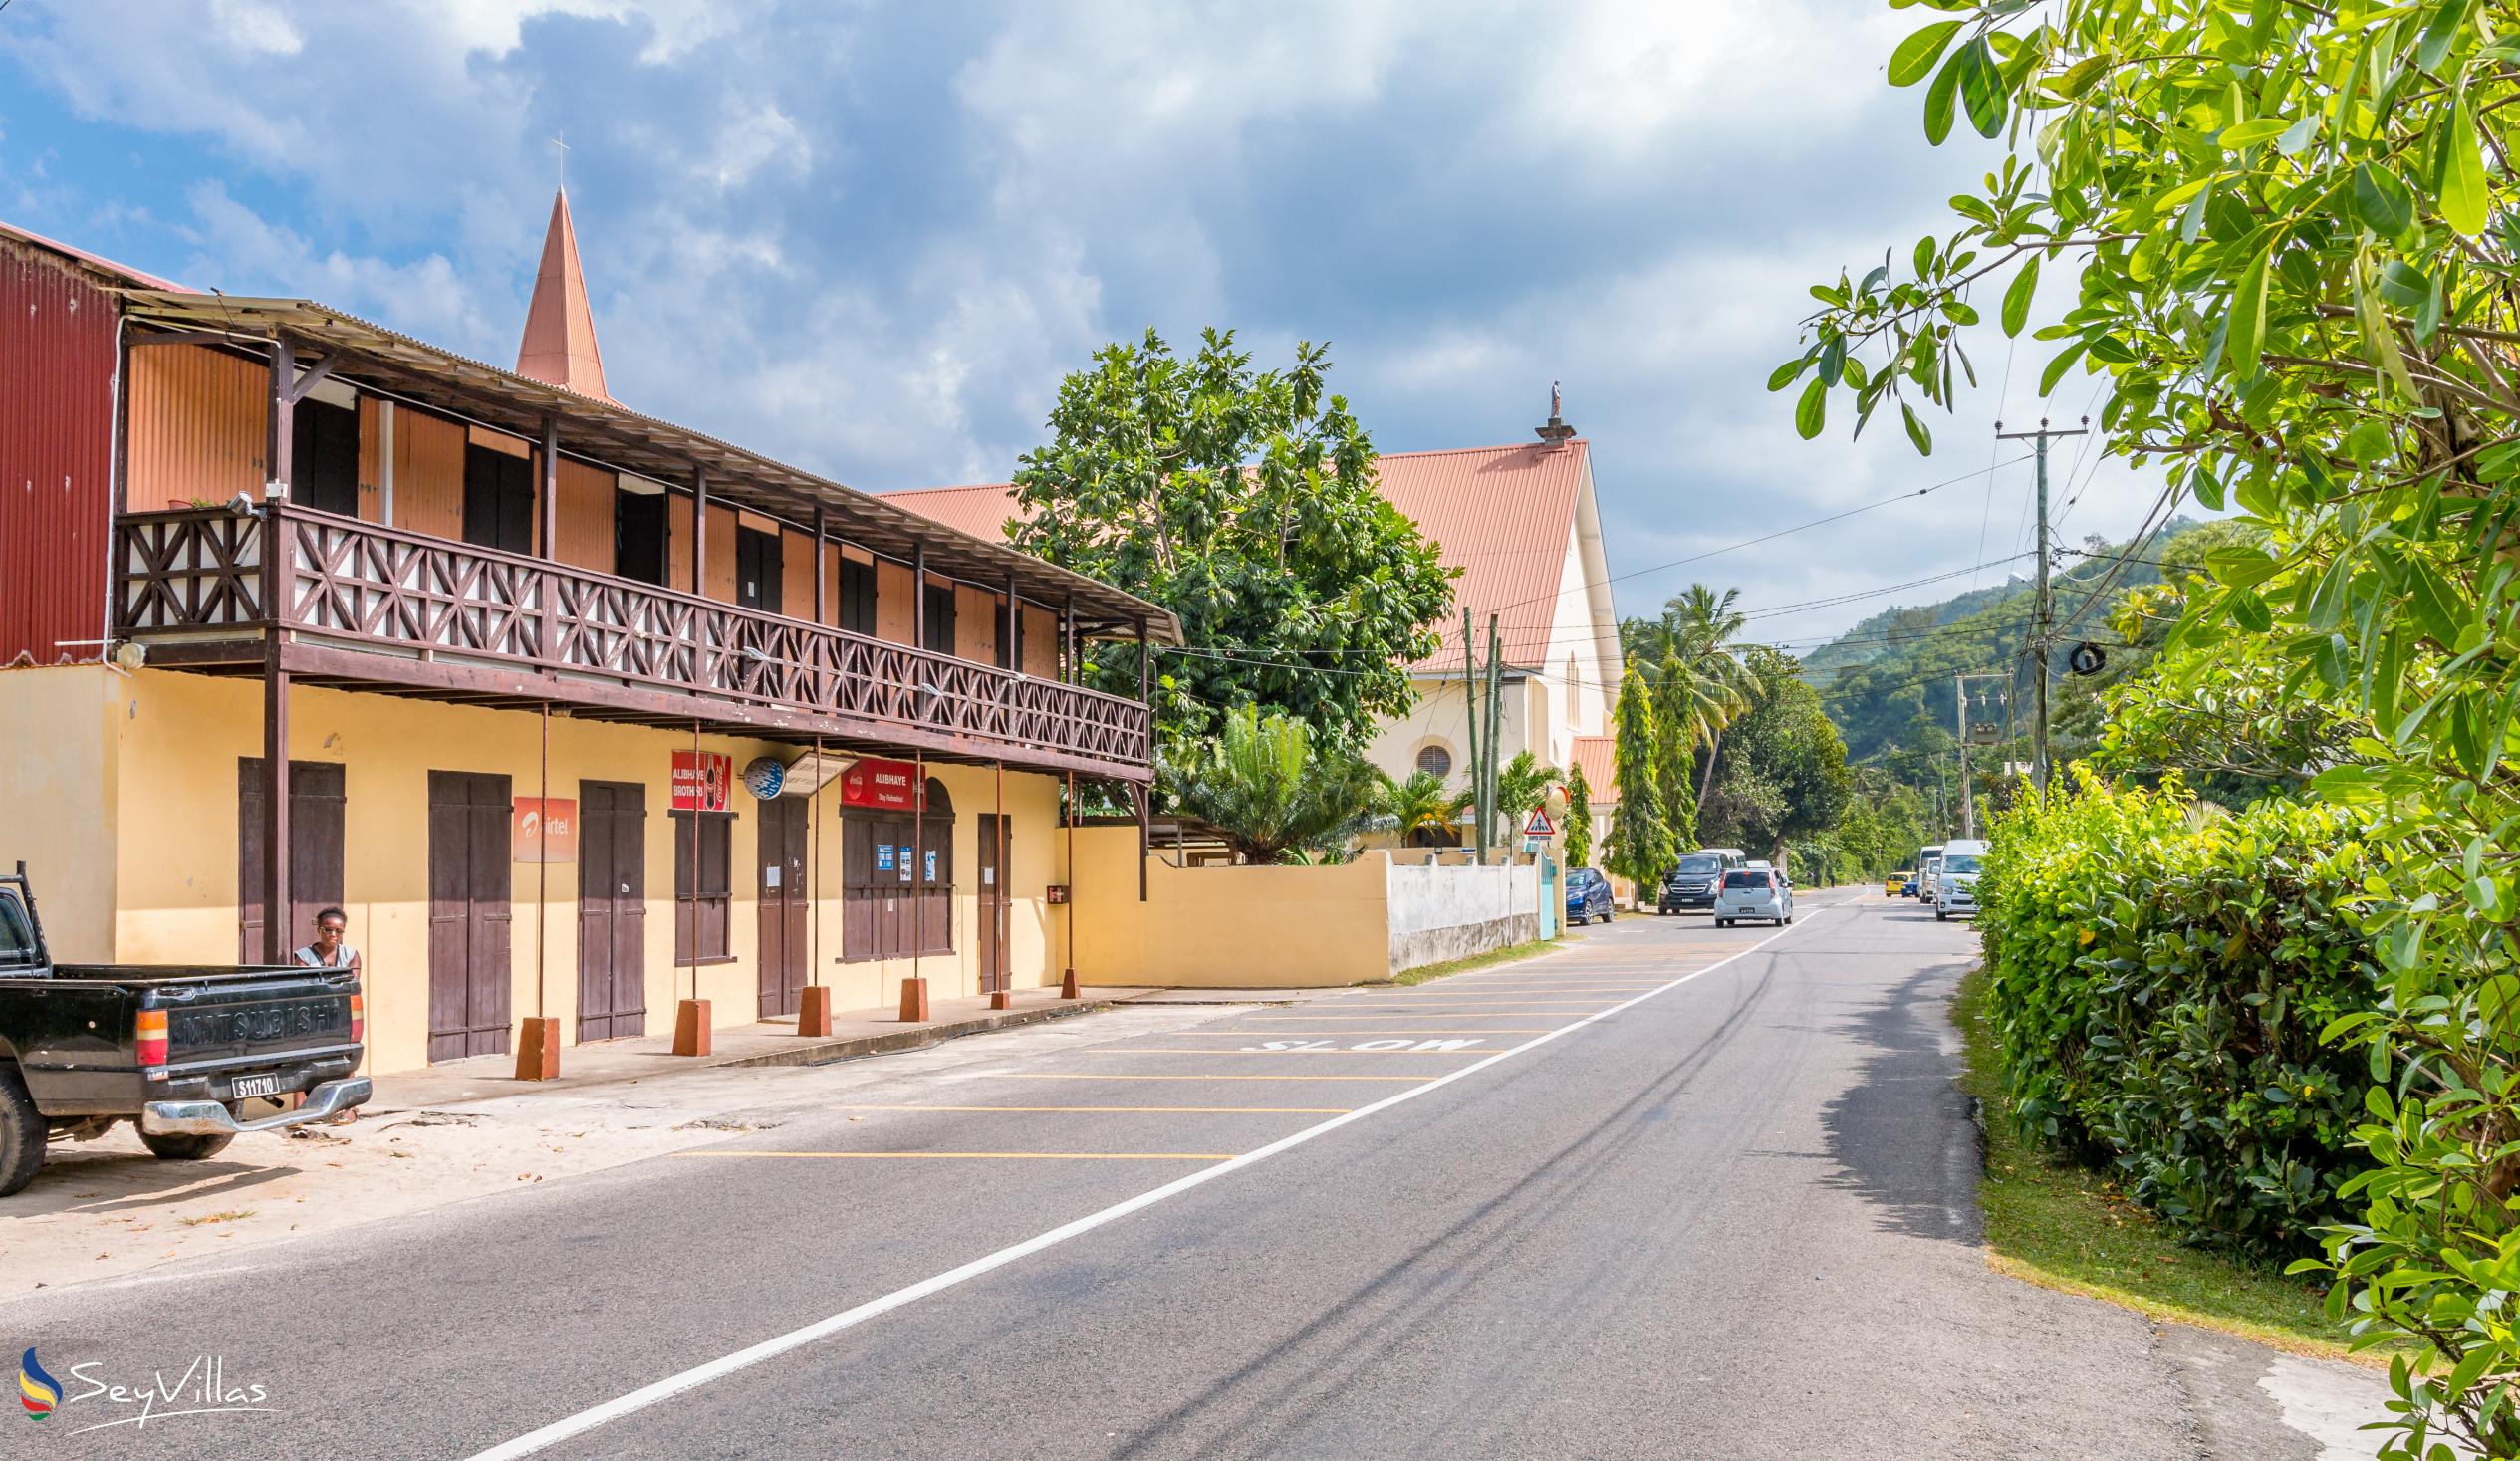 Foto 21: Coco Blanche (Maison Coco) - Location - Mahé (Seychelles)